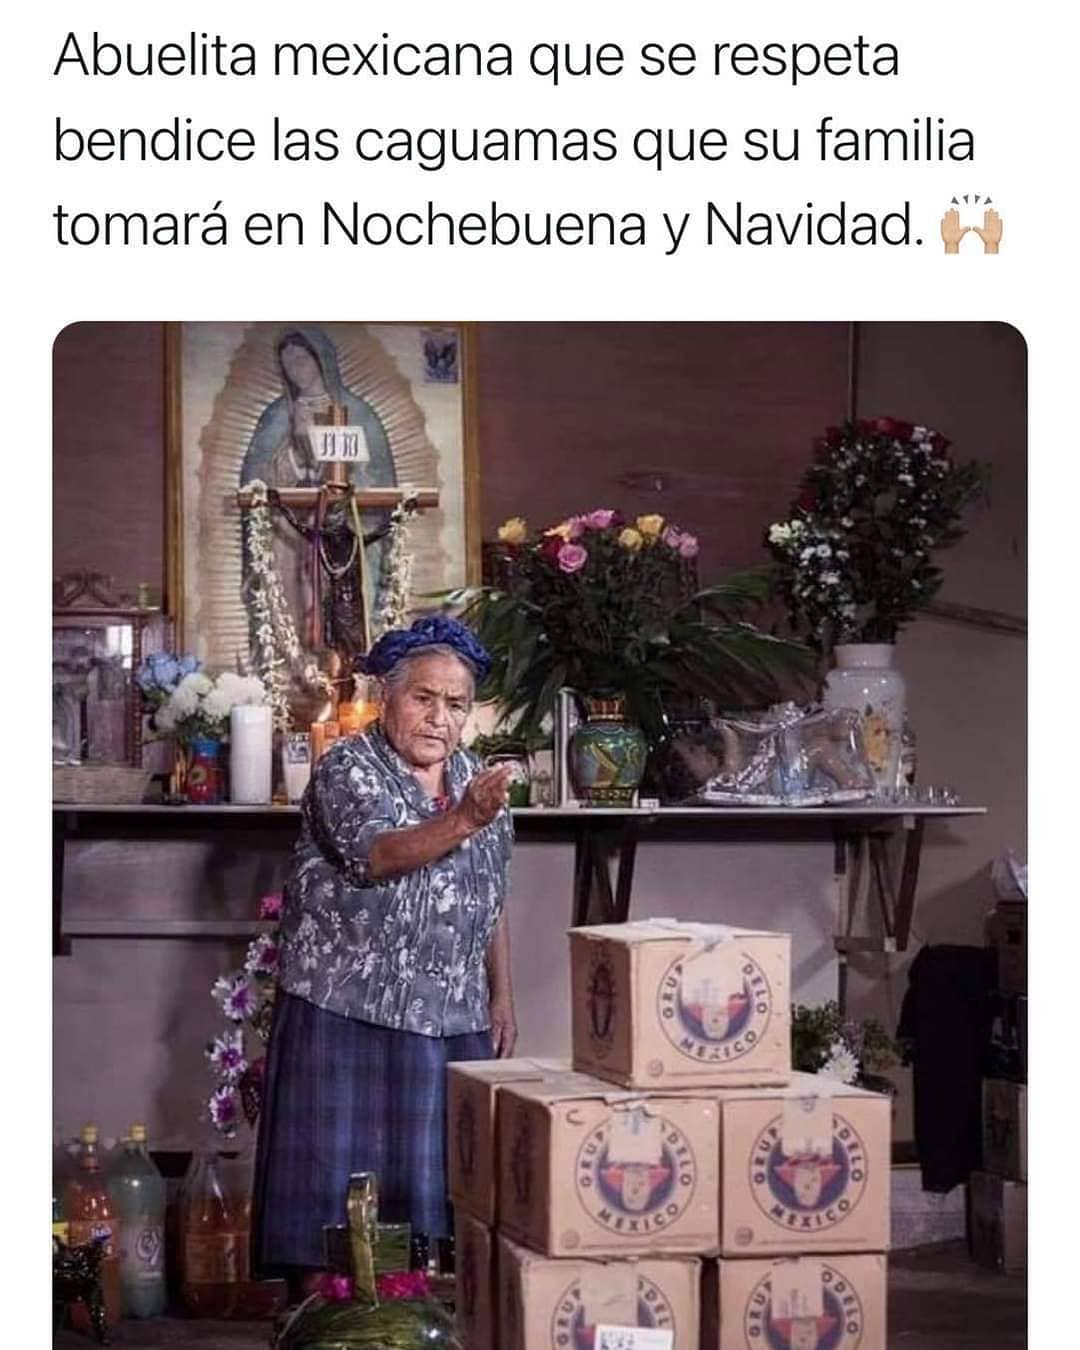 Abuelita mexicana que se respeta bendice las caguamas que su familia tomará en Nochebuena y Navidad.